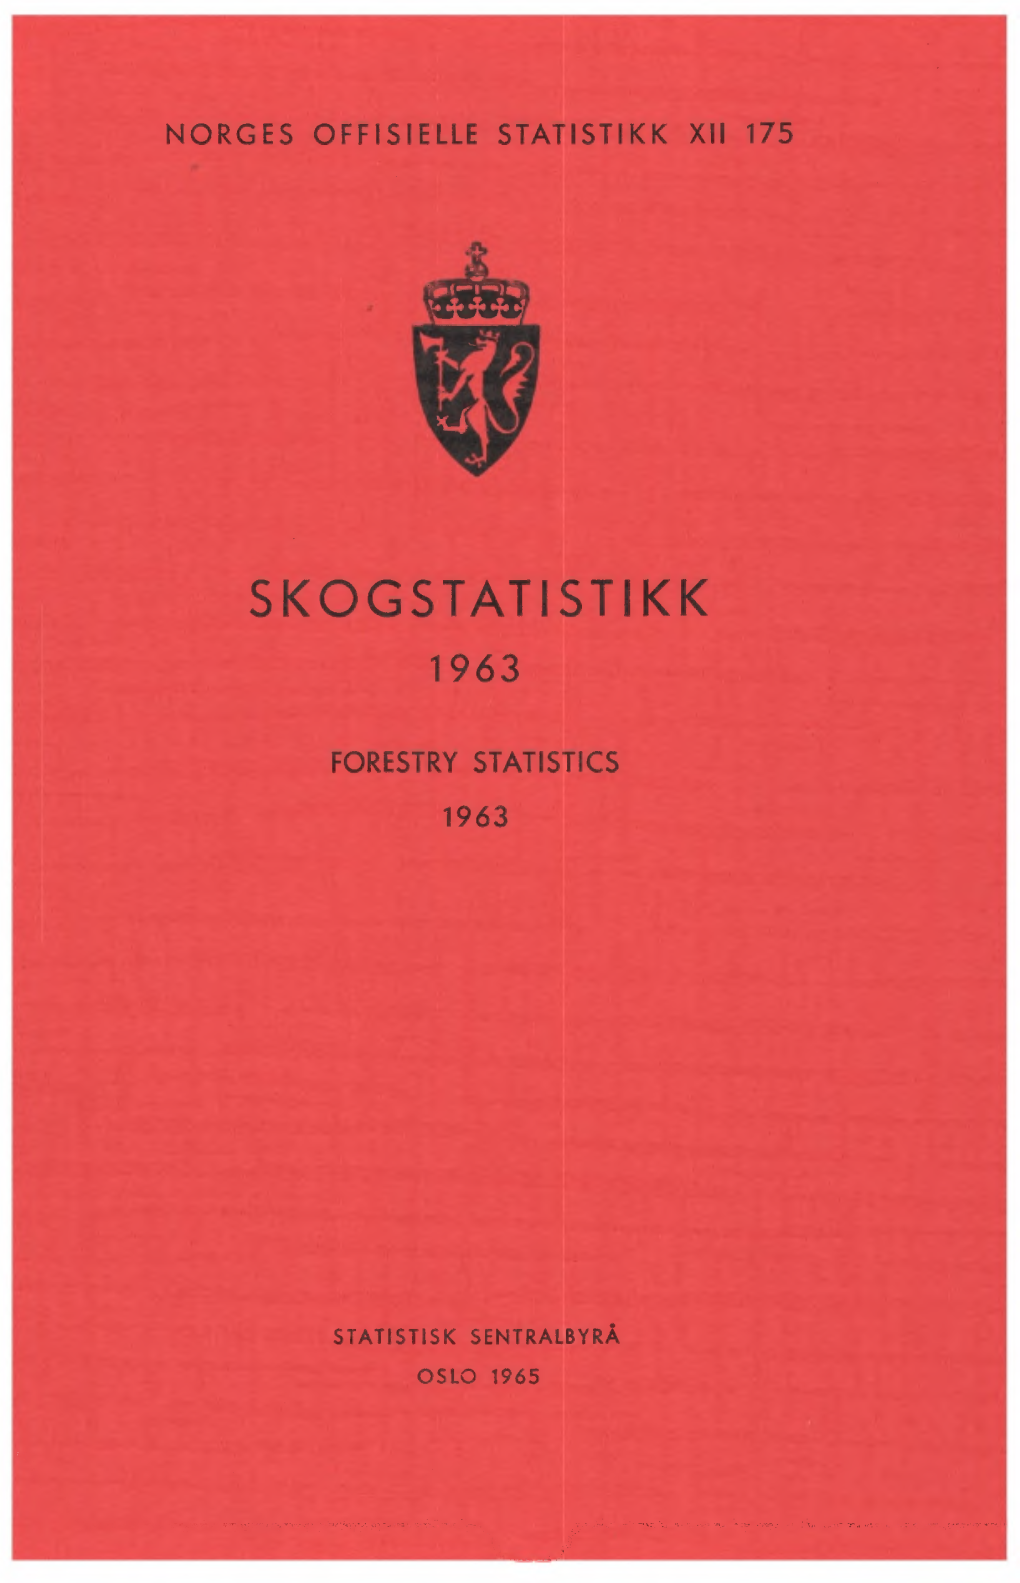 Skogstatistikk 1963 Er Lagt Opp Etter De Samme Retningslinjer Som De Tidligere Publikasjoner I Denne Serie